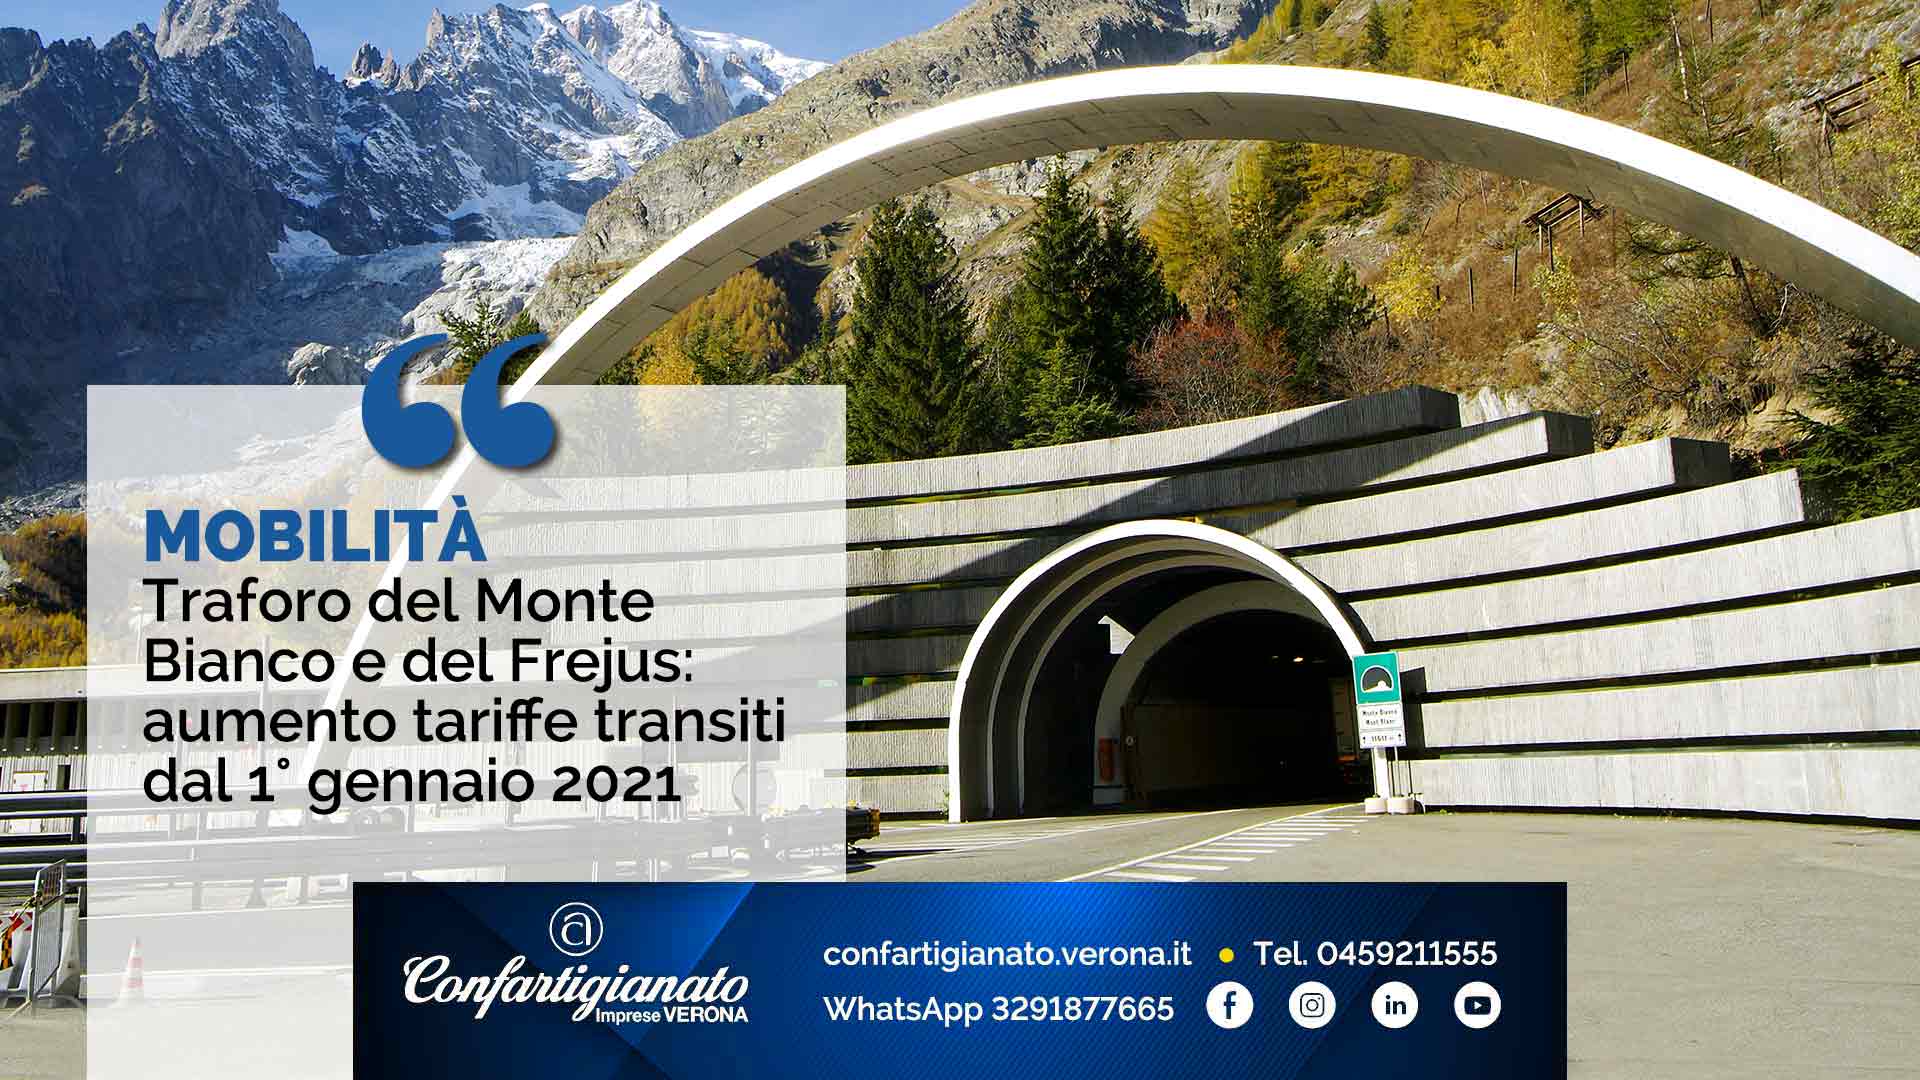 MOBILITA' – Traforo del Monte bianco e del Frejus: aumento tariffe transiti dal 1° gennaio 2021